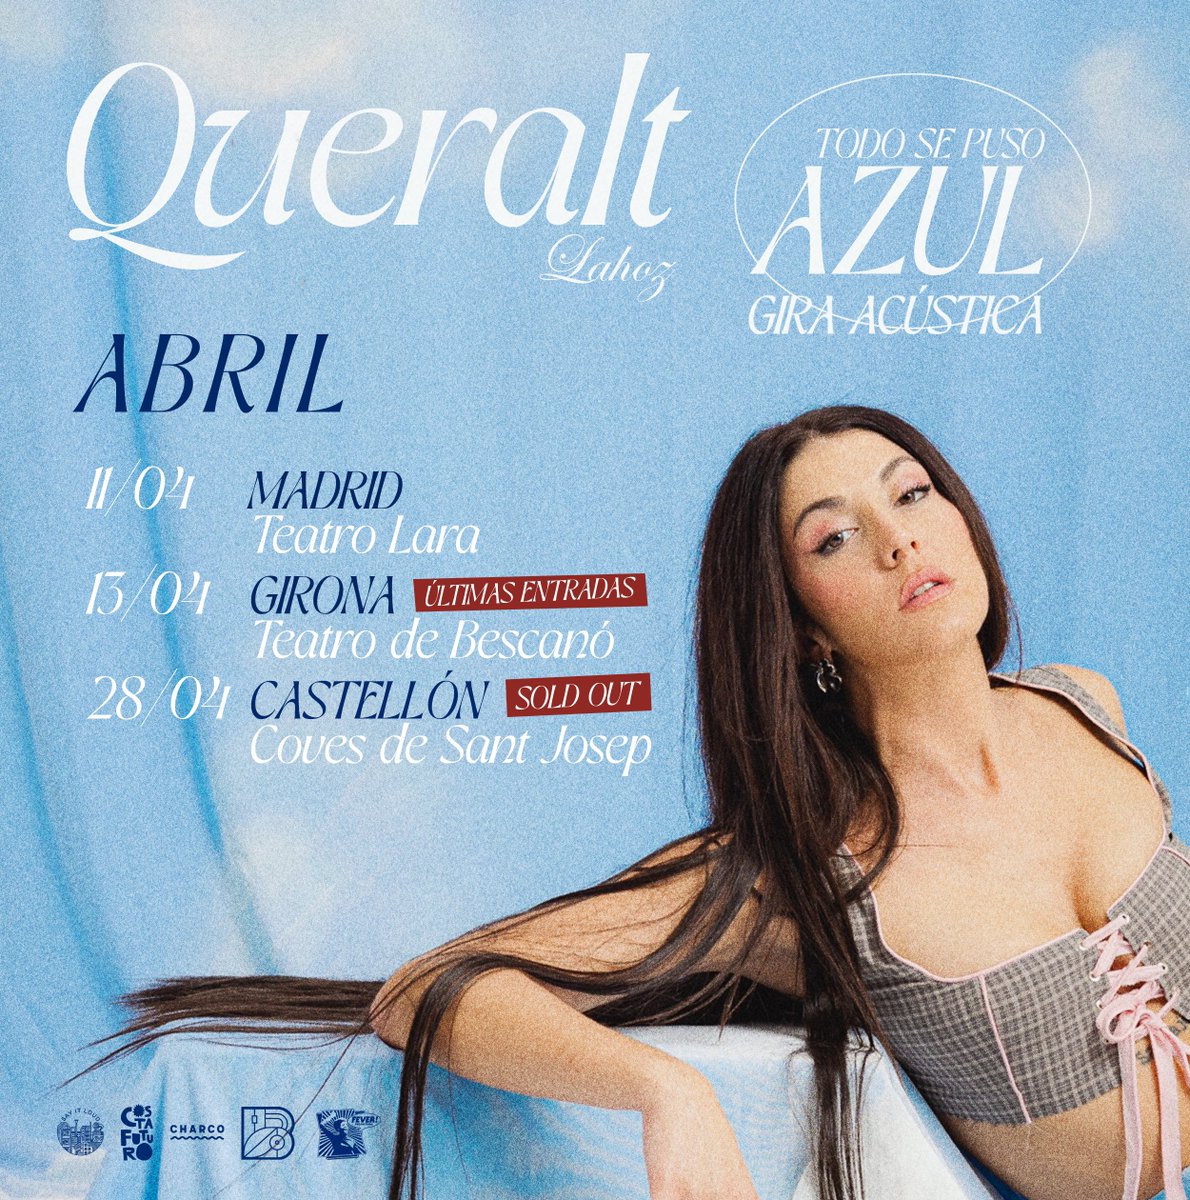 Este abril, nos vamos Alto Cielo💙☁️ 11/04 Madrid 13/04 Girona (últimas entradas) 28/04 Castellón (sold out) entradas en queraltlahoz.com